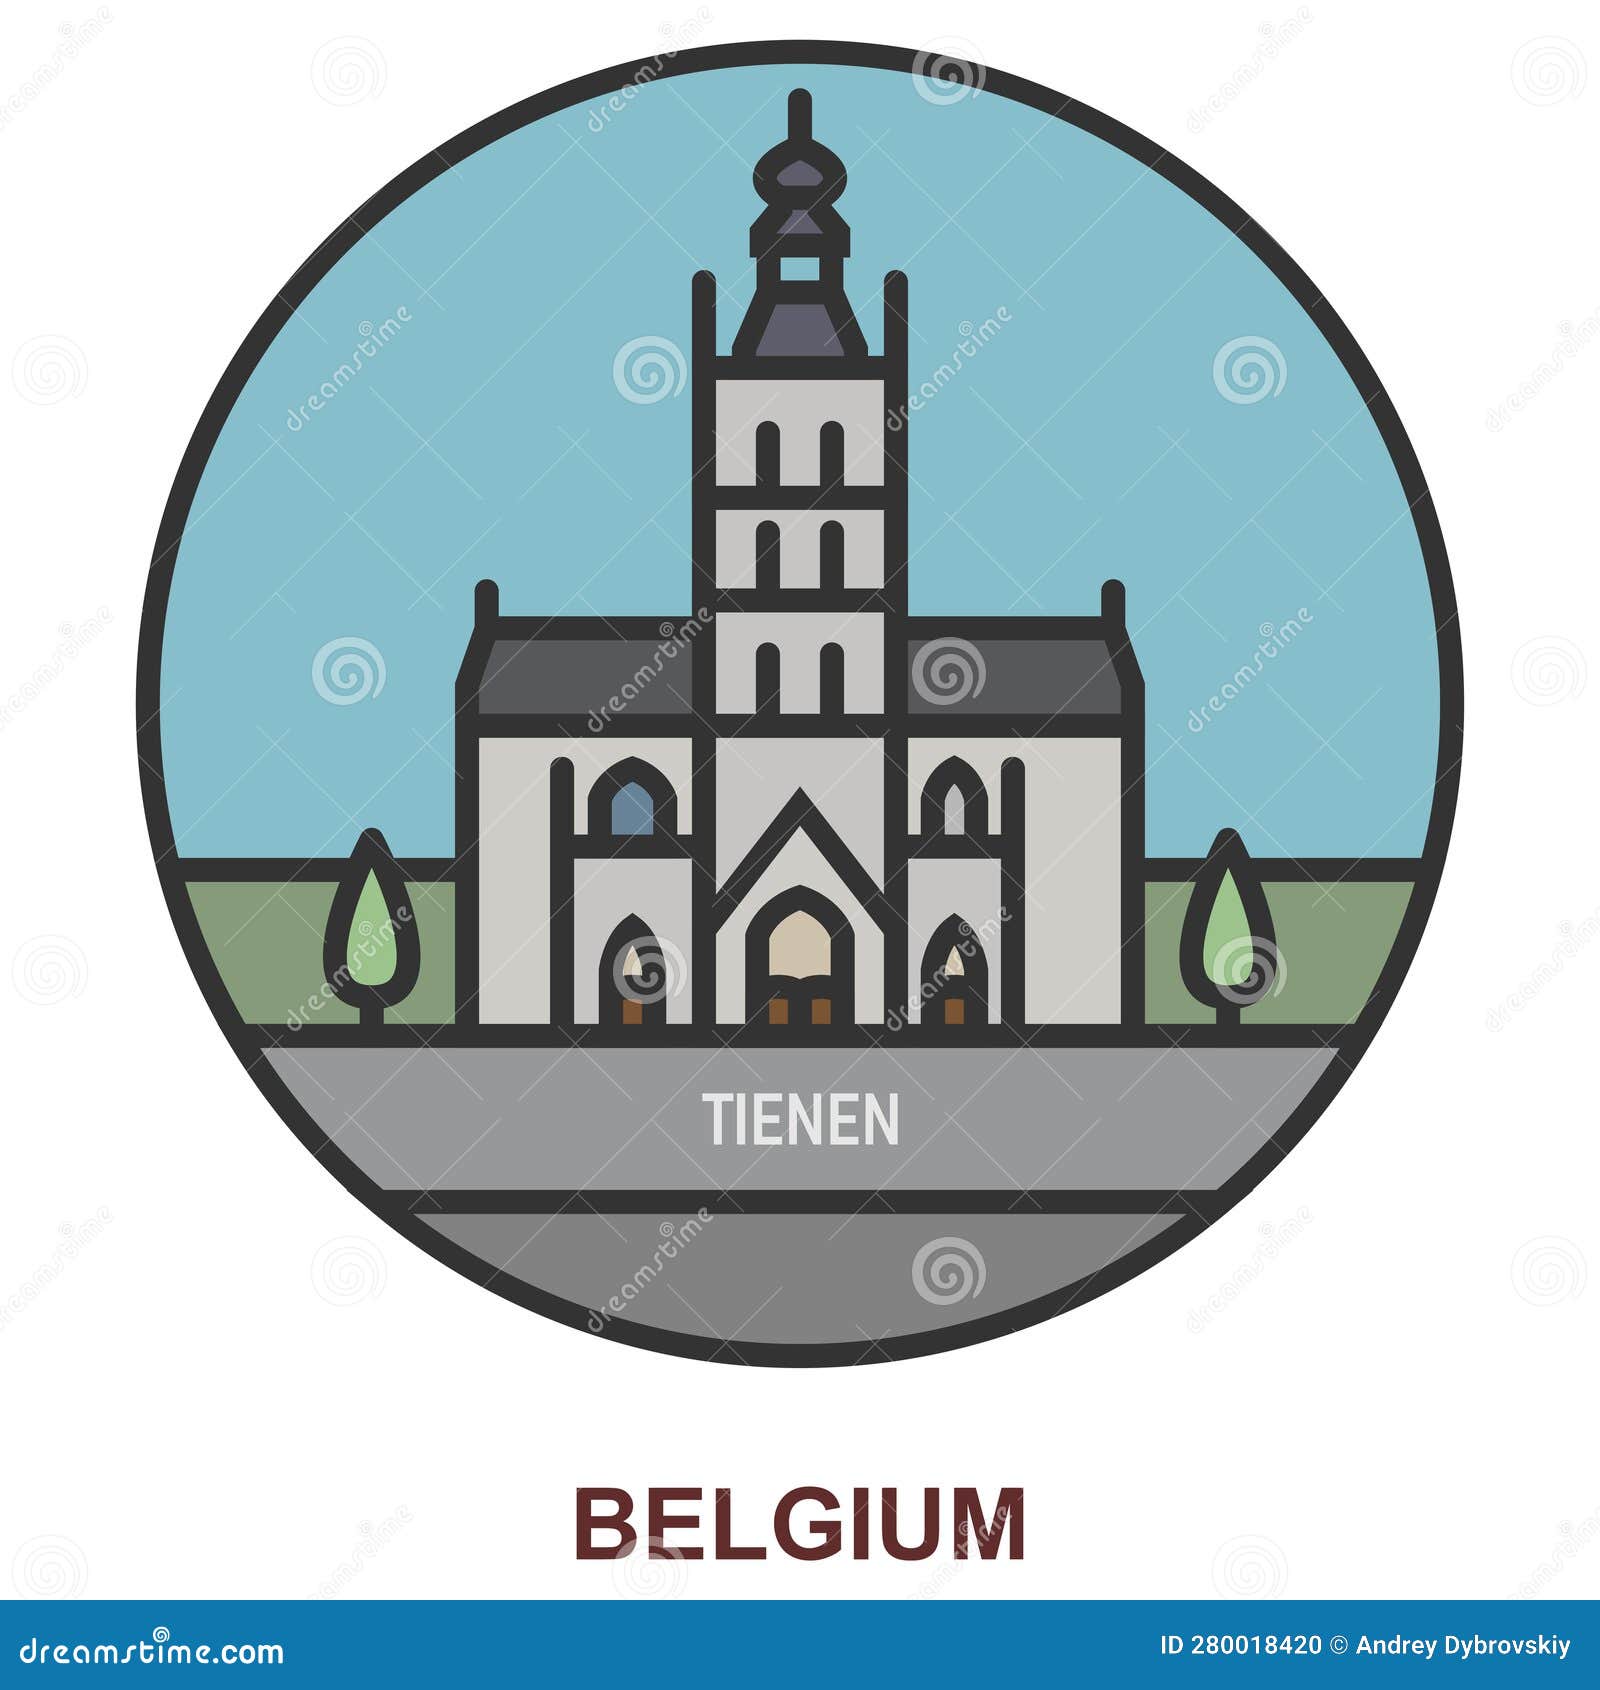 tienen. cities and towns in belgium